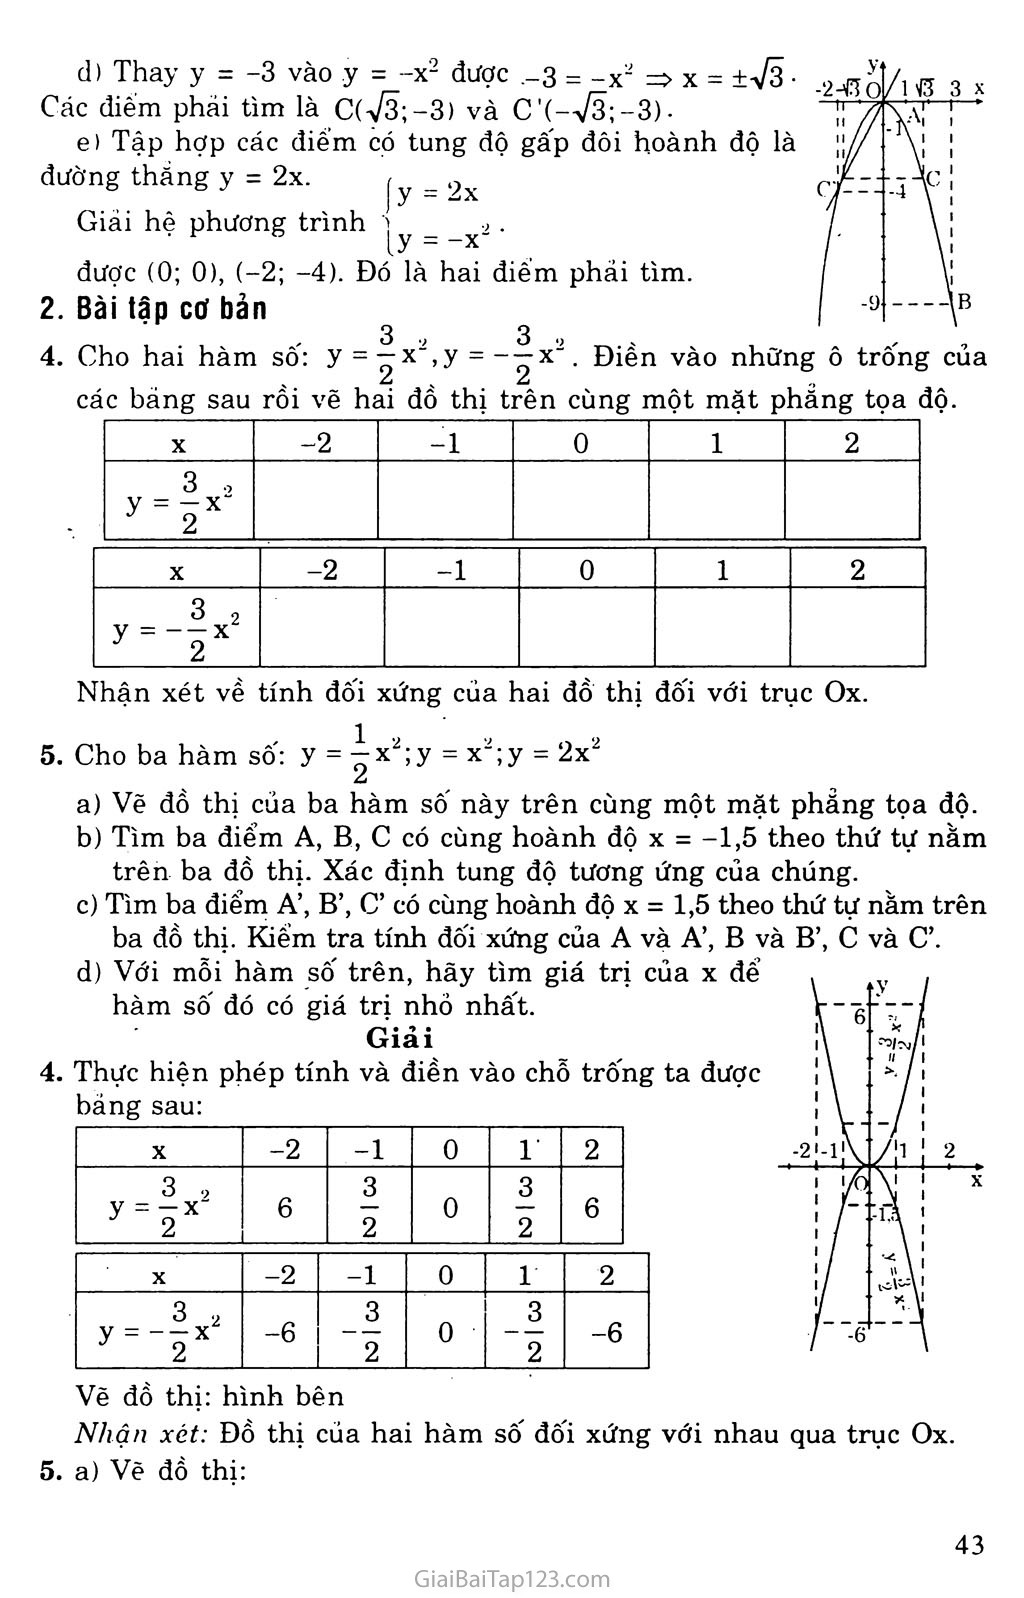 Bài 2. Đồ thị hàm số y = ax2 (a khác 0) trang 2